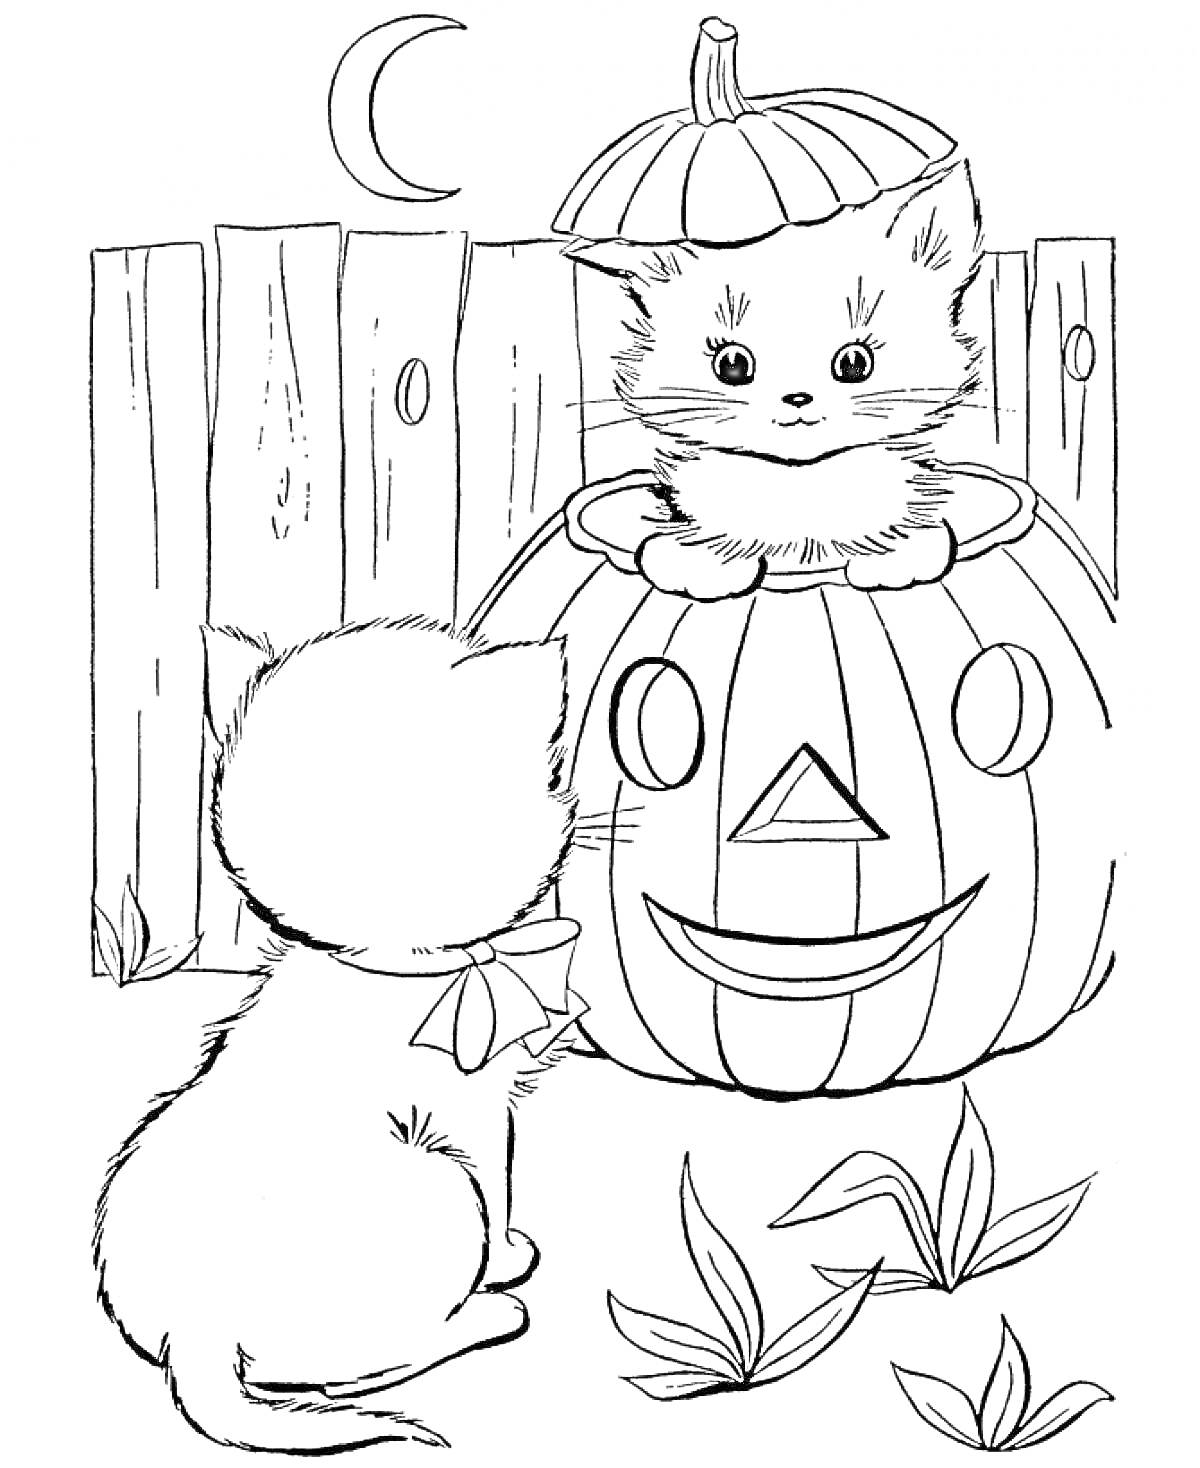 Раскраска Два котенка, один из которых сидит внутри тыквенного фонаря, а второй у тыквы; забор, полумесяц, листья на земле